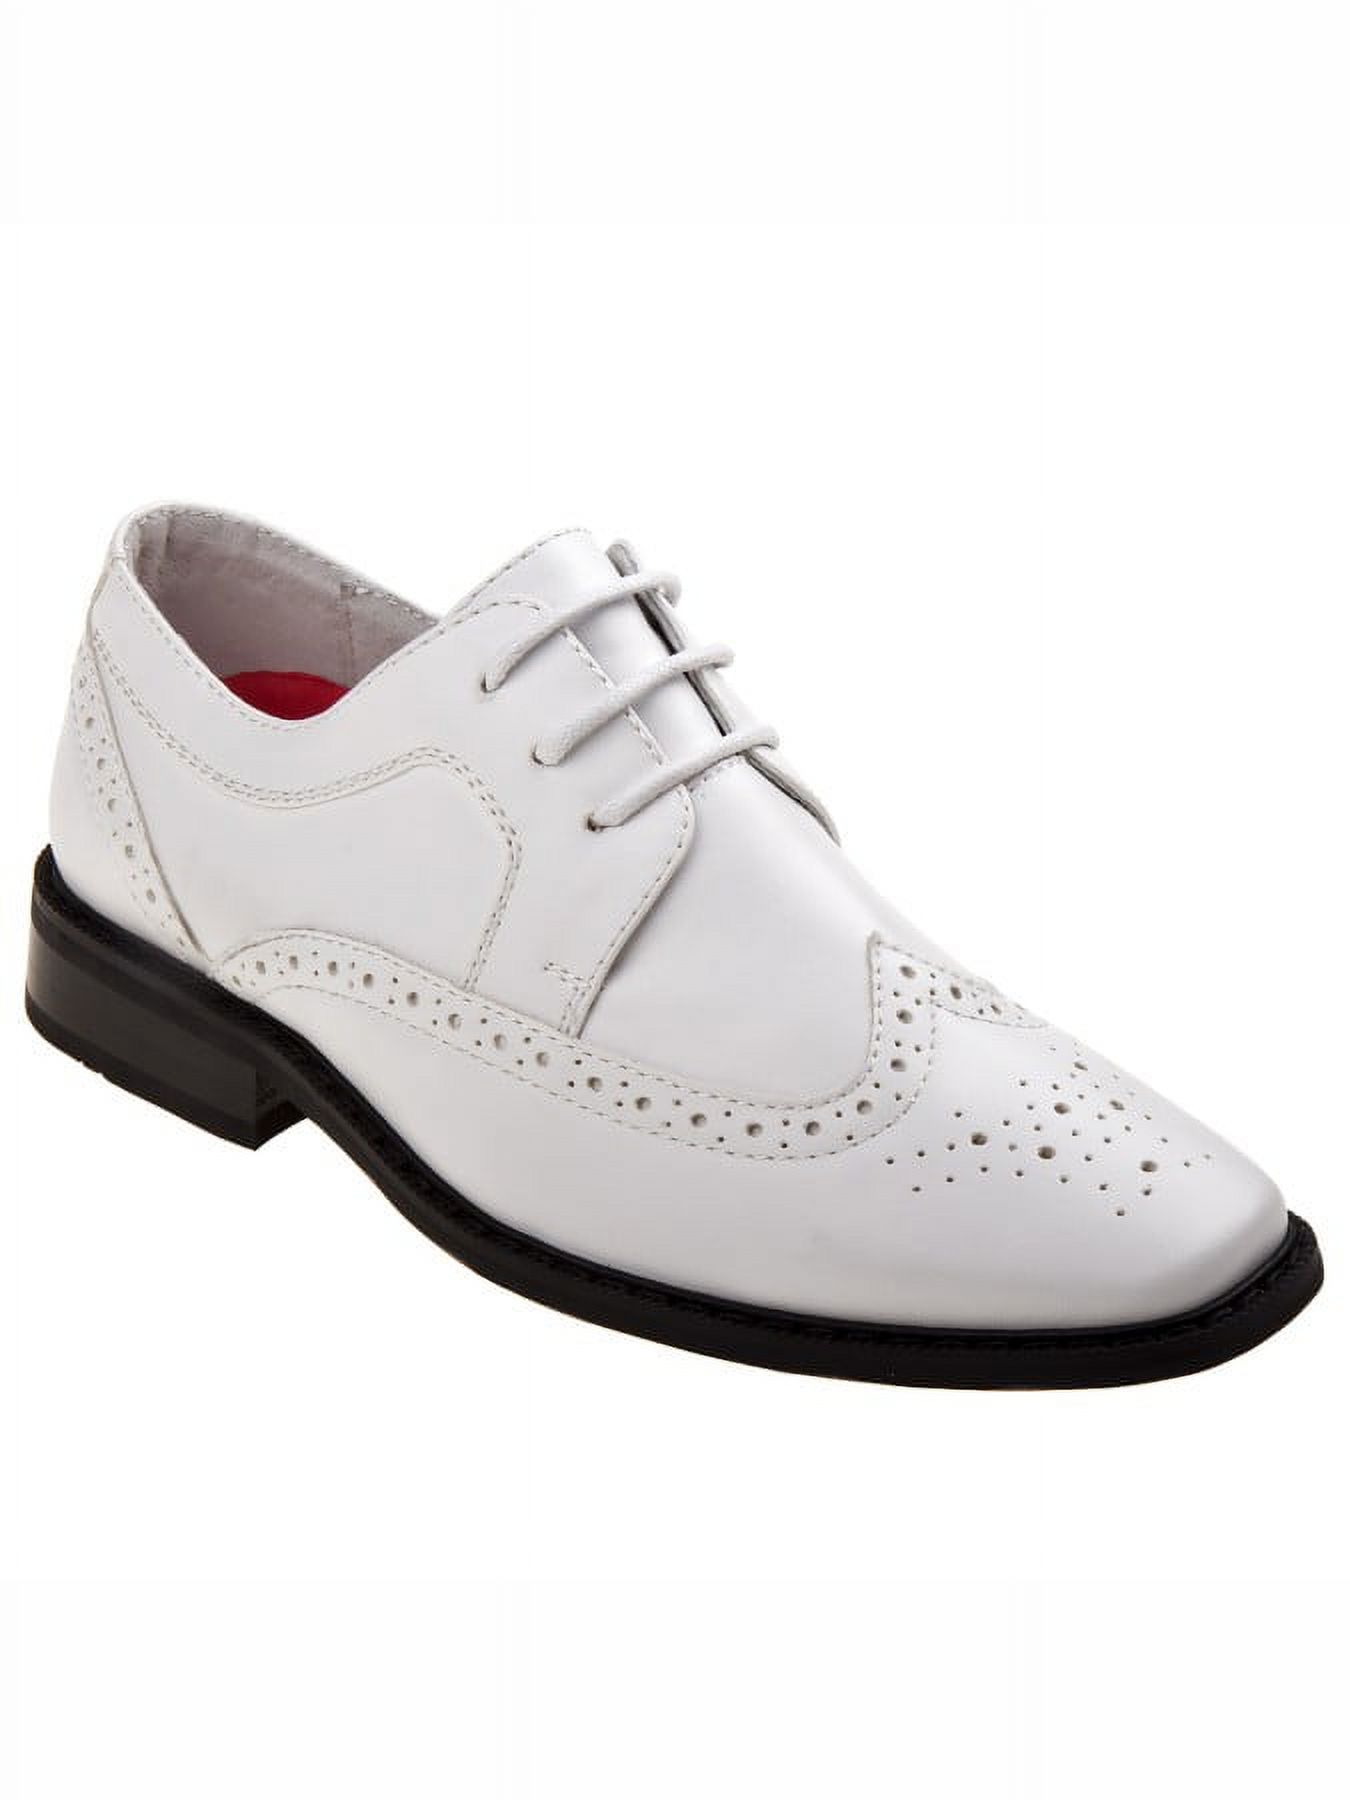 Joseph Allen Boys Lace Child Dress Shoes - White, 4 - image 1 of 5